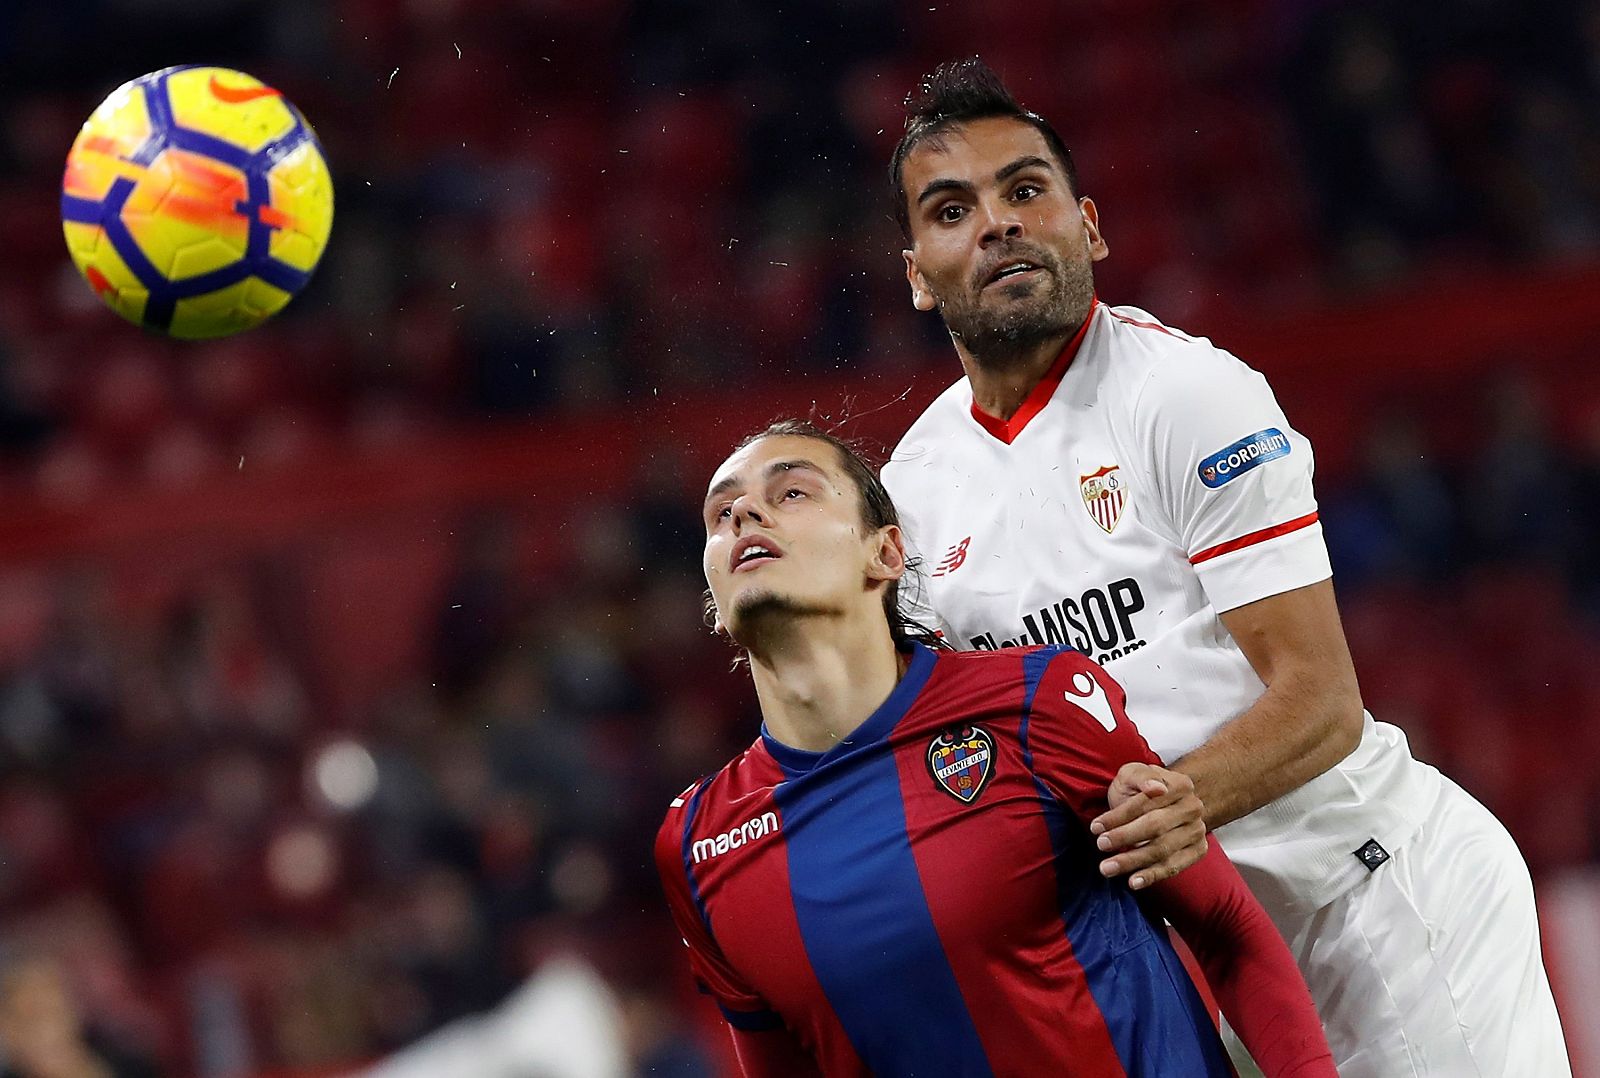 Mercado lucha con Antonio Luna durante el partido de la decimosexta jornada de Liga.